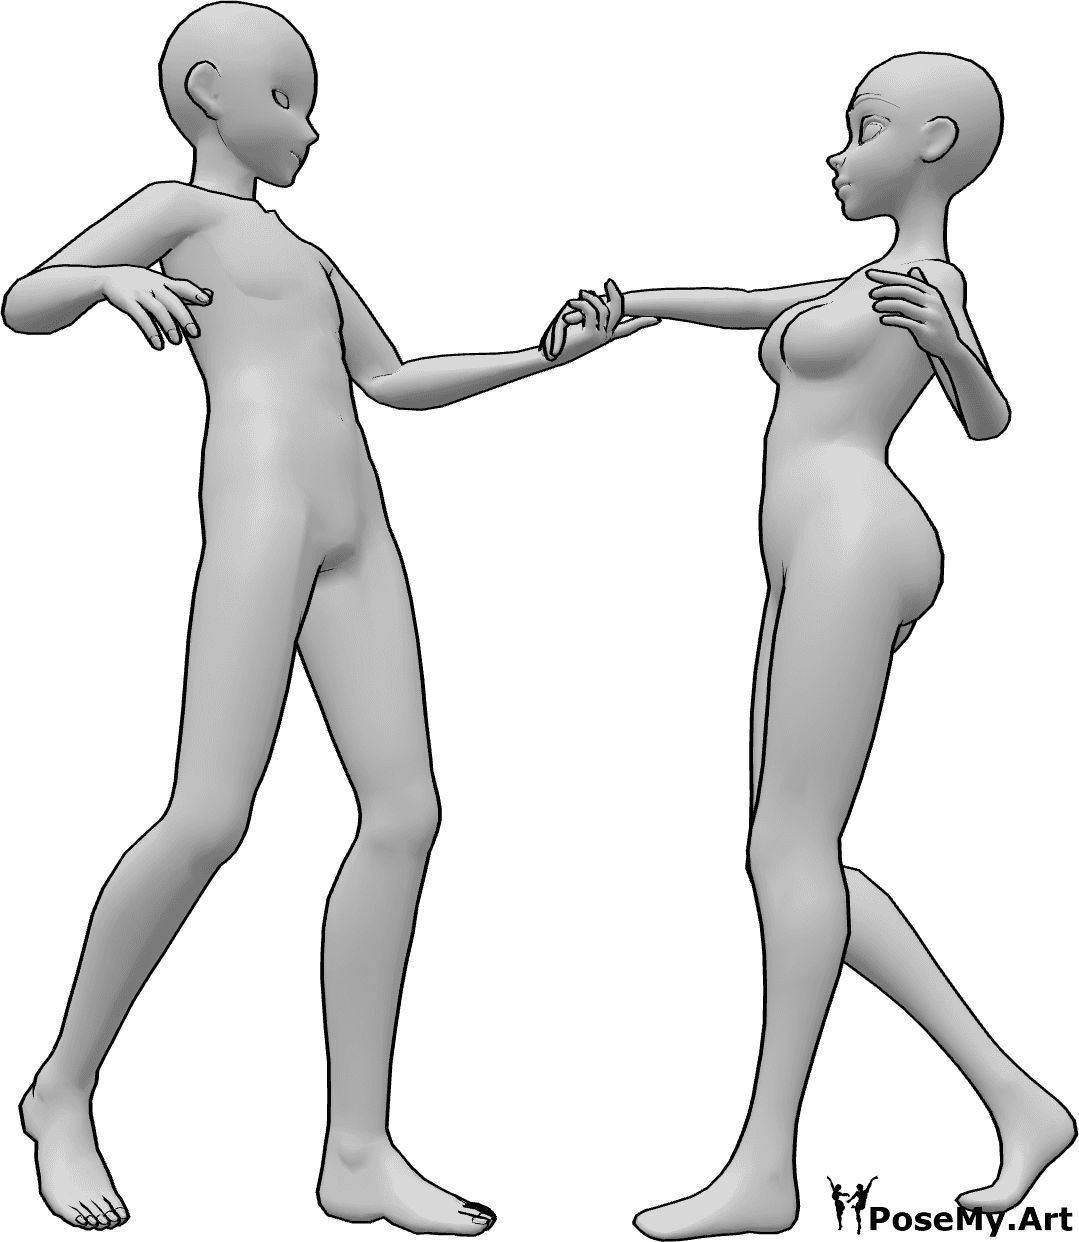 Référence des poses- Pose de danse d'anime - Une femme et un homme dansent, l'homme tient la main droite de la femme.